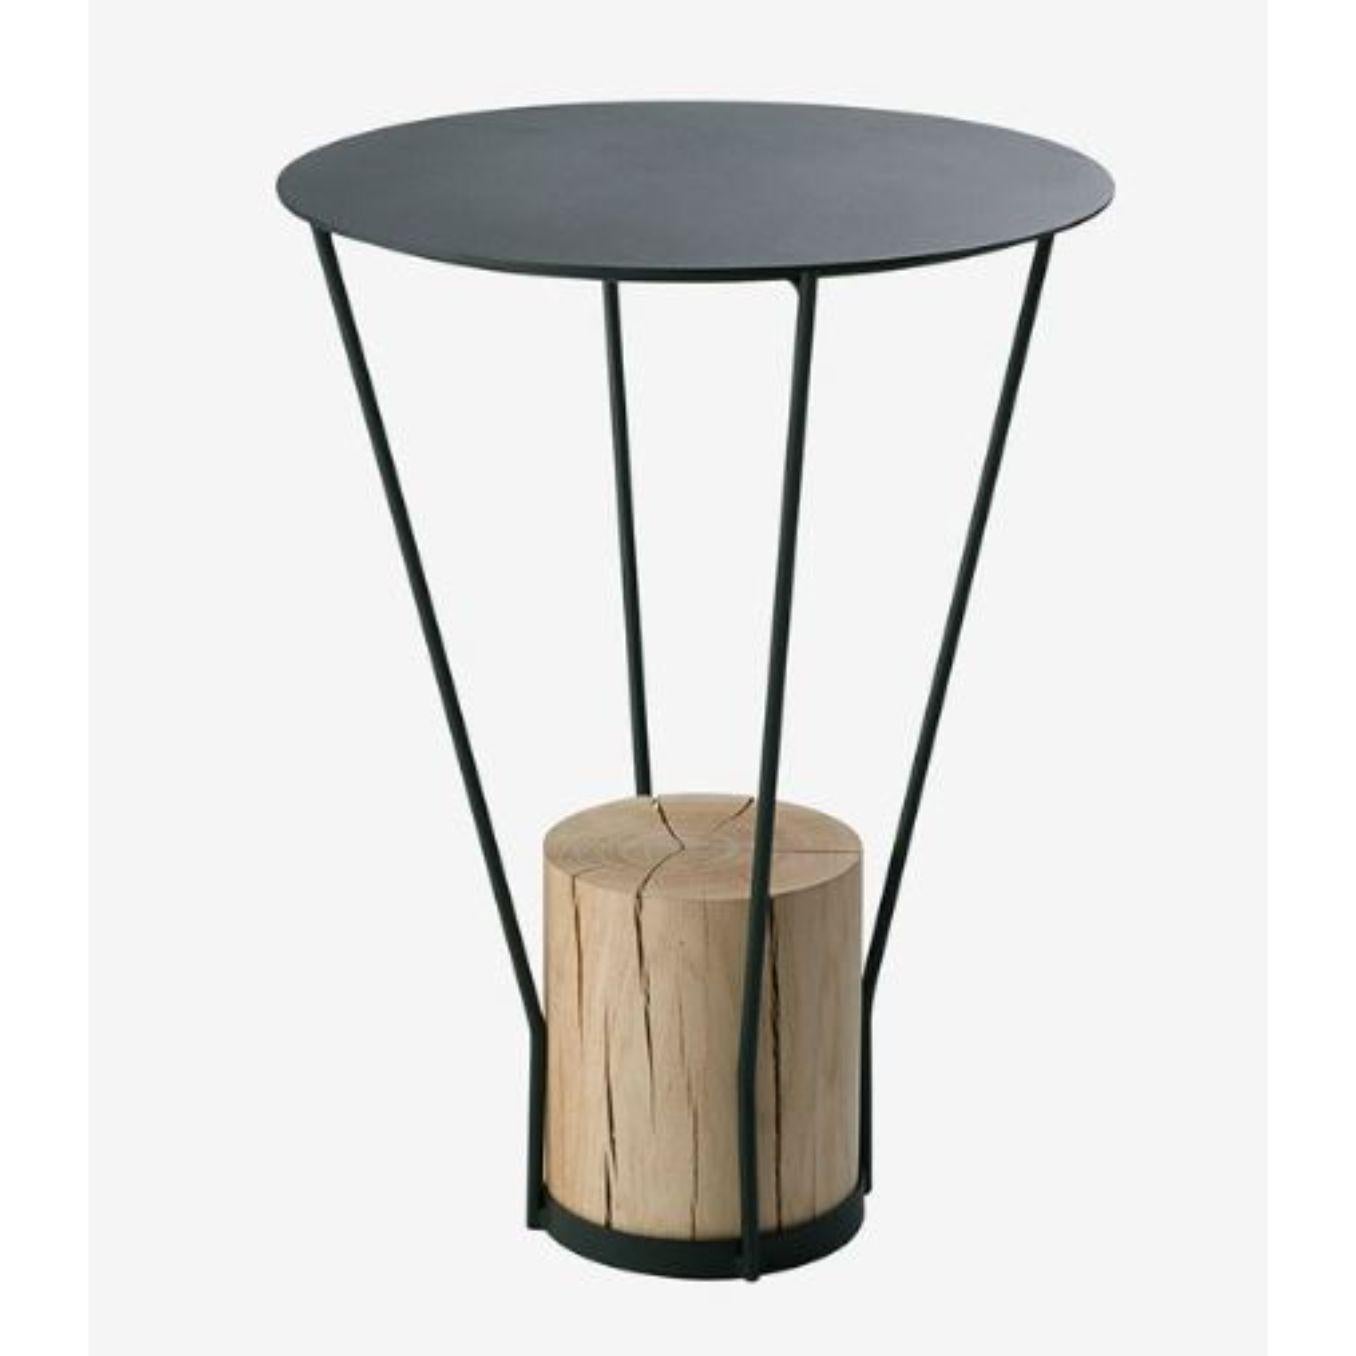 Petite table basse en bois avec base en chêne par RADAR
Design/One : Bastien Taillard
Matériaux : Métal, chêne.
Dimensions : L 30 x D 30 x H 40 cm
Également disponible avec une base en marbre.

Elegant, intemporel, discret. La collection RADAR